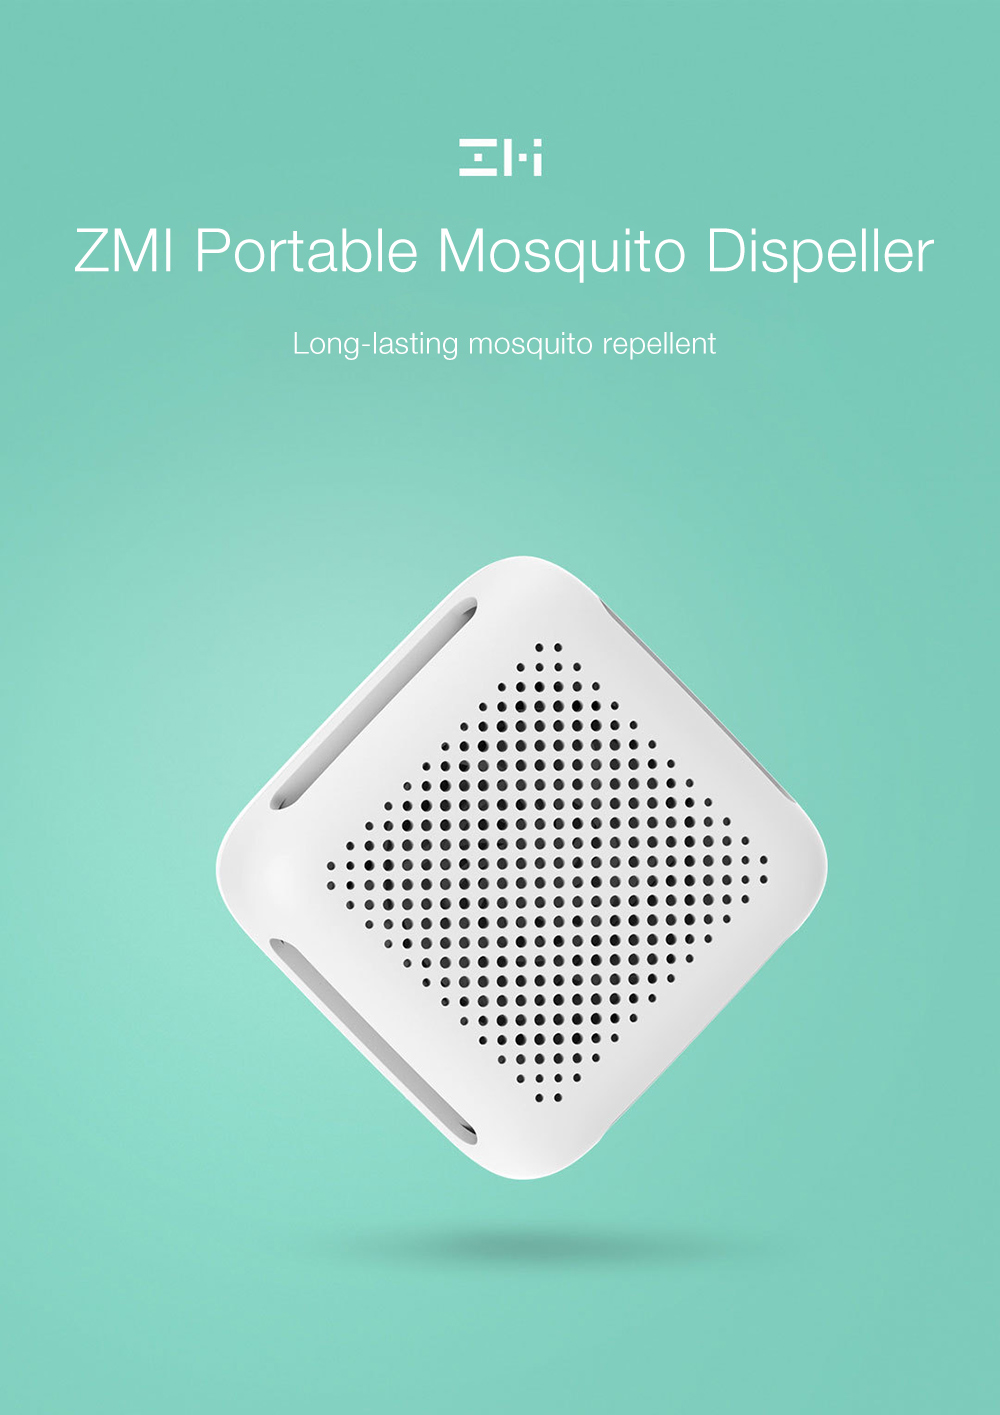 ZMI Portable Efficient Mosquito Dispeller